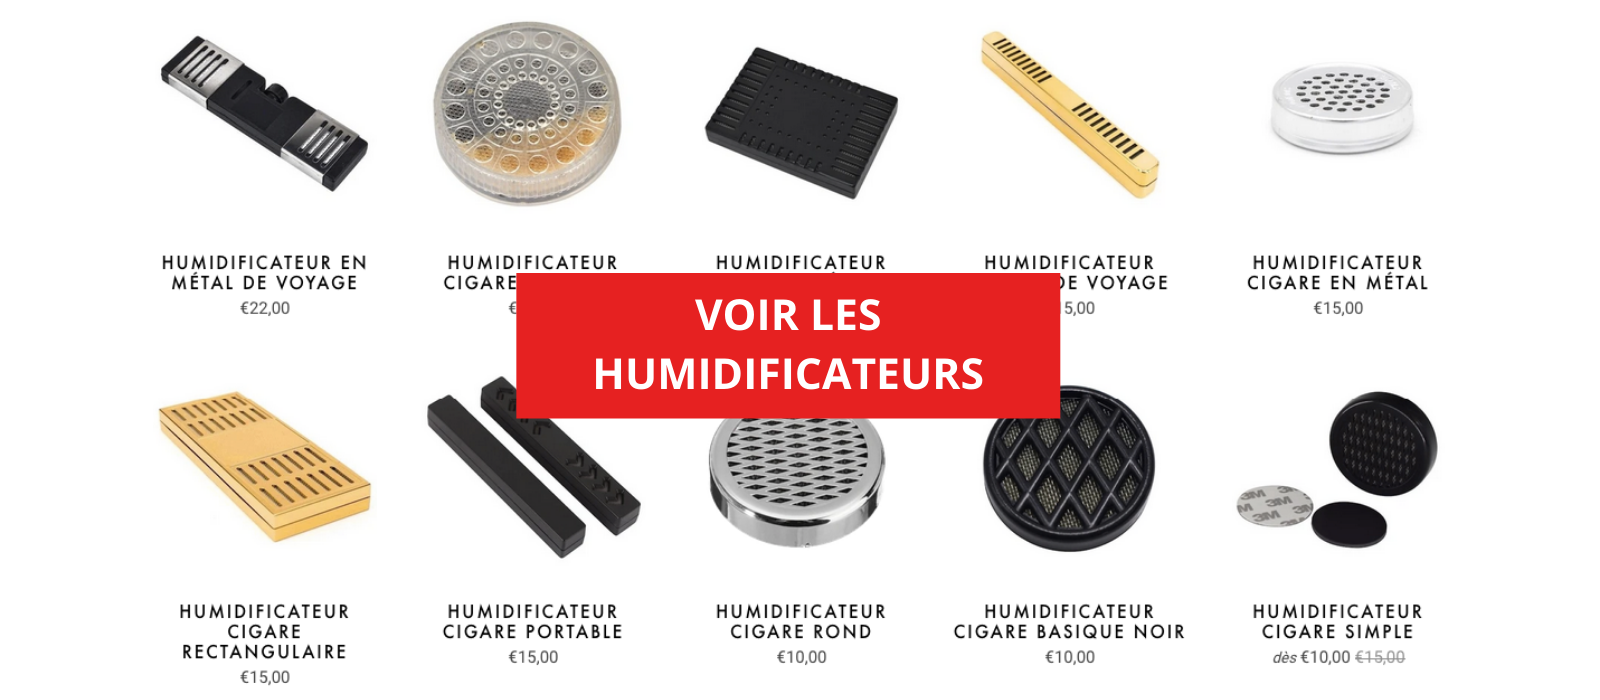 Les différents humidificateurs pour cigares